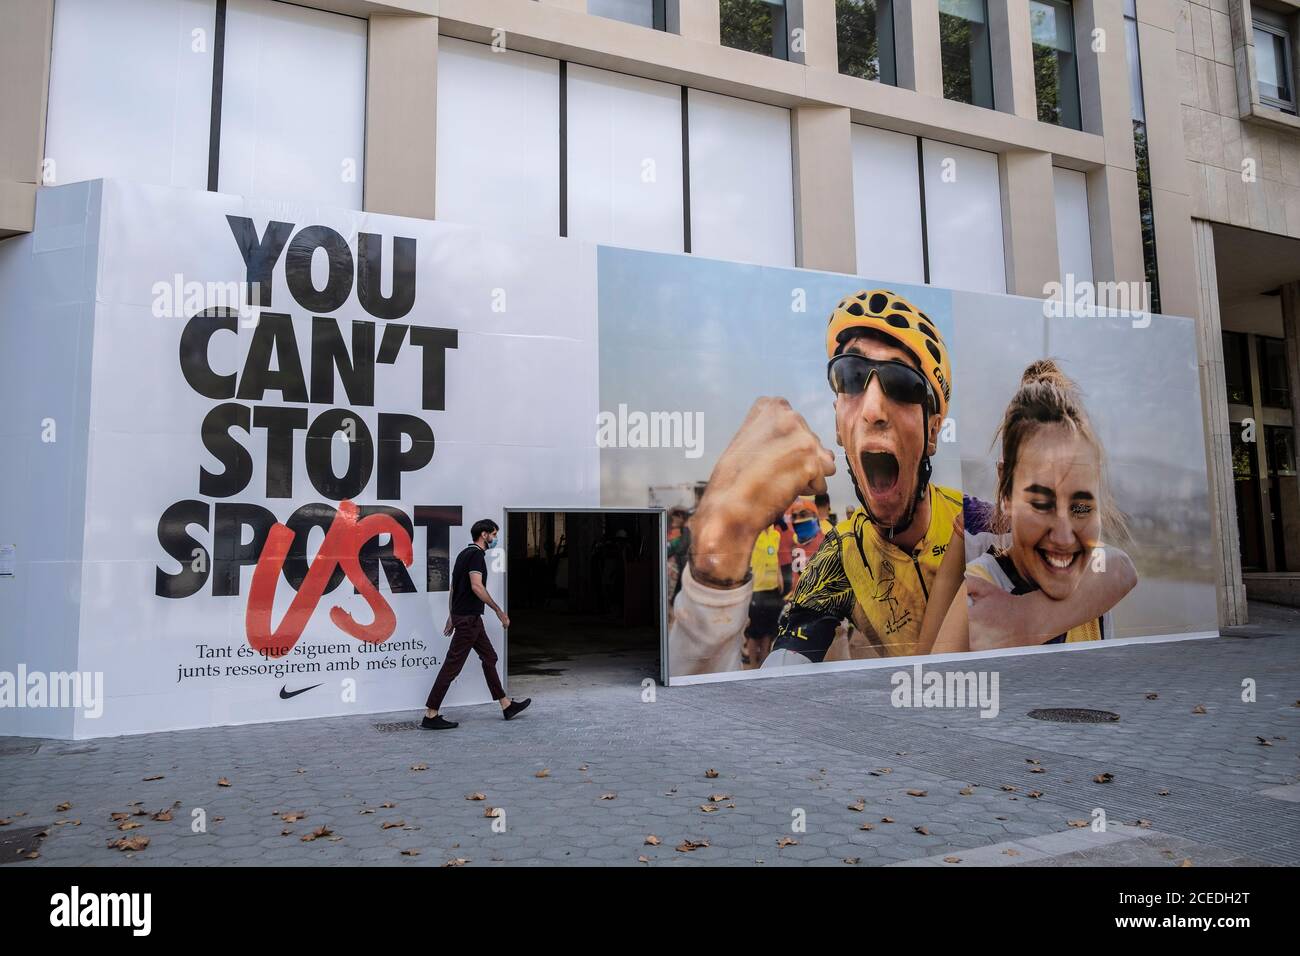 Barcelona, España. 31 de agosto de 2020. La nueva campaña publicitaria de  Nike se ve en un local comercial en construcción en Passeig de  Gràcia.Agosto termina con el mayor número de locales